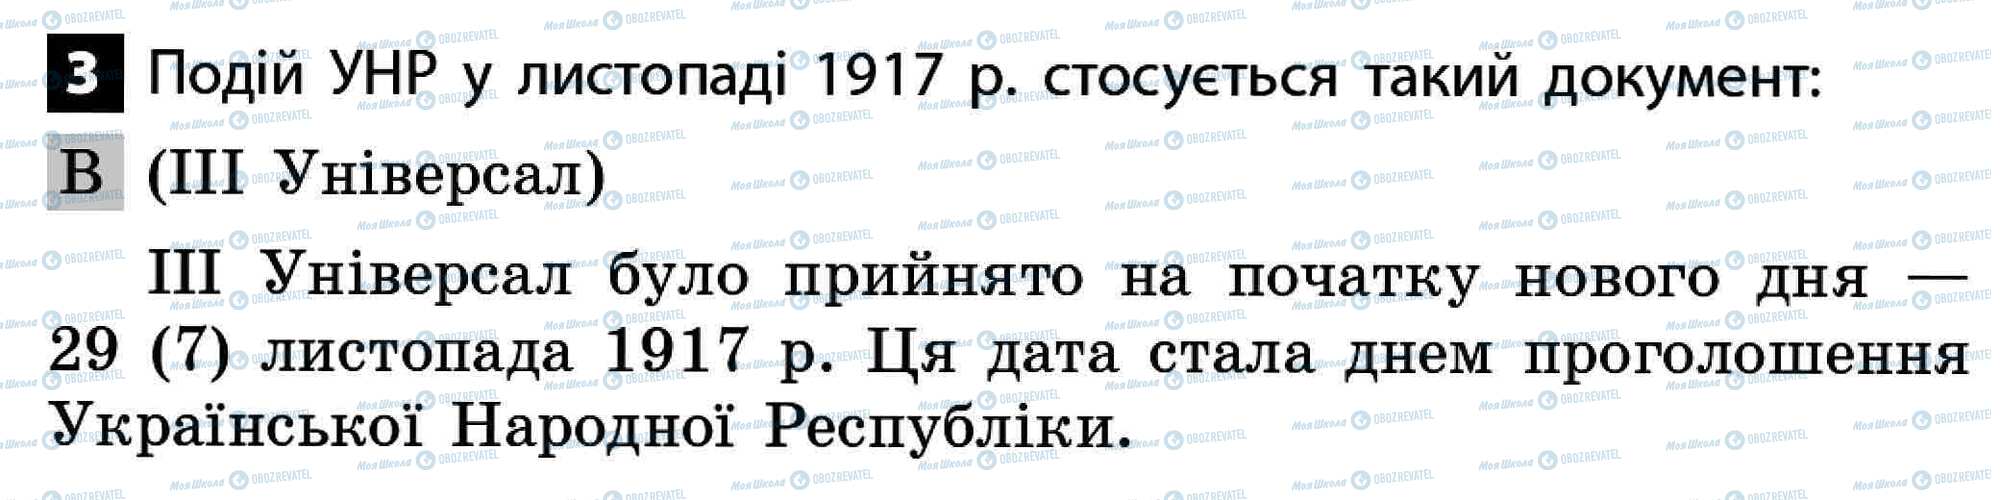 ДПА История Украины 11 класс страница 3